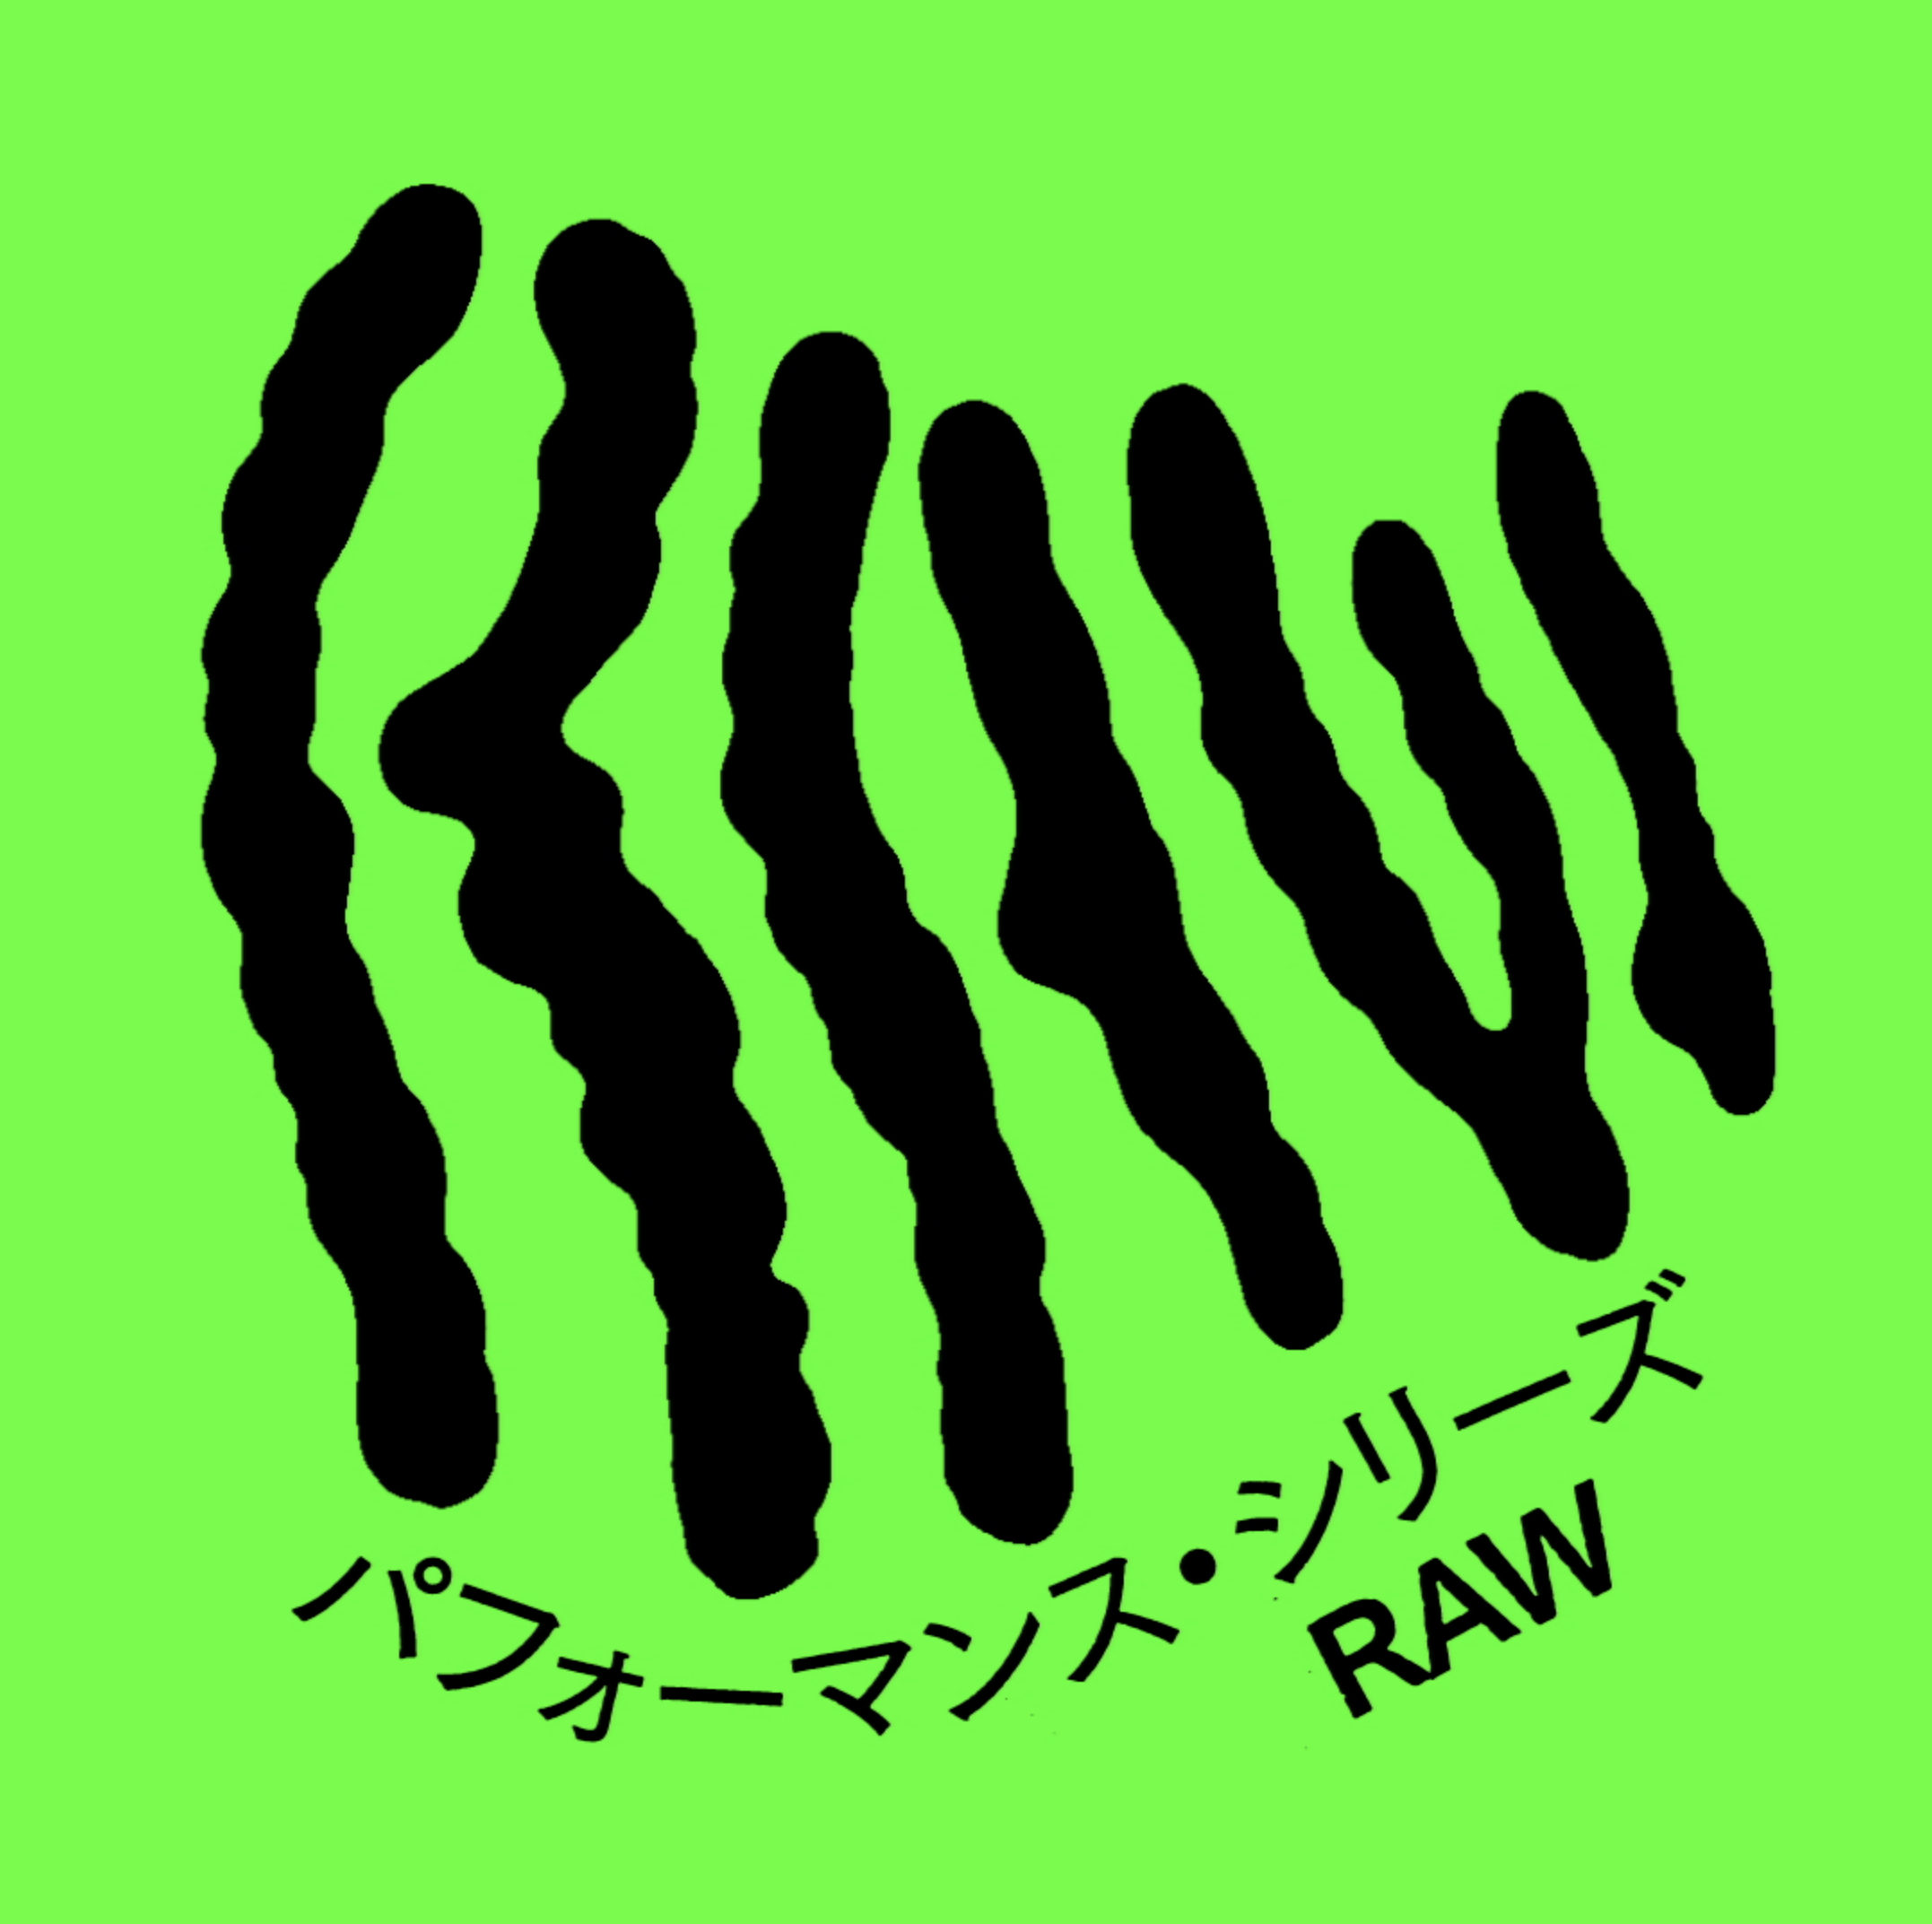 パフォーマンス・シリーズ「RAW」<b>【配信中】</b>